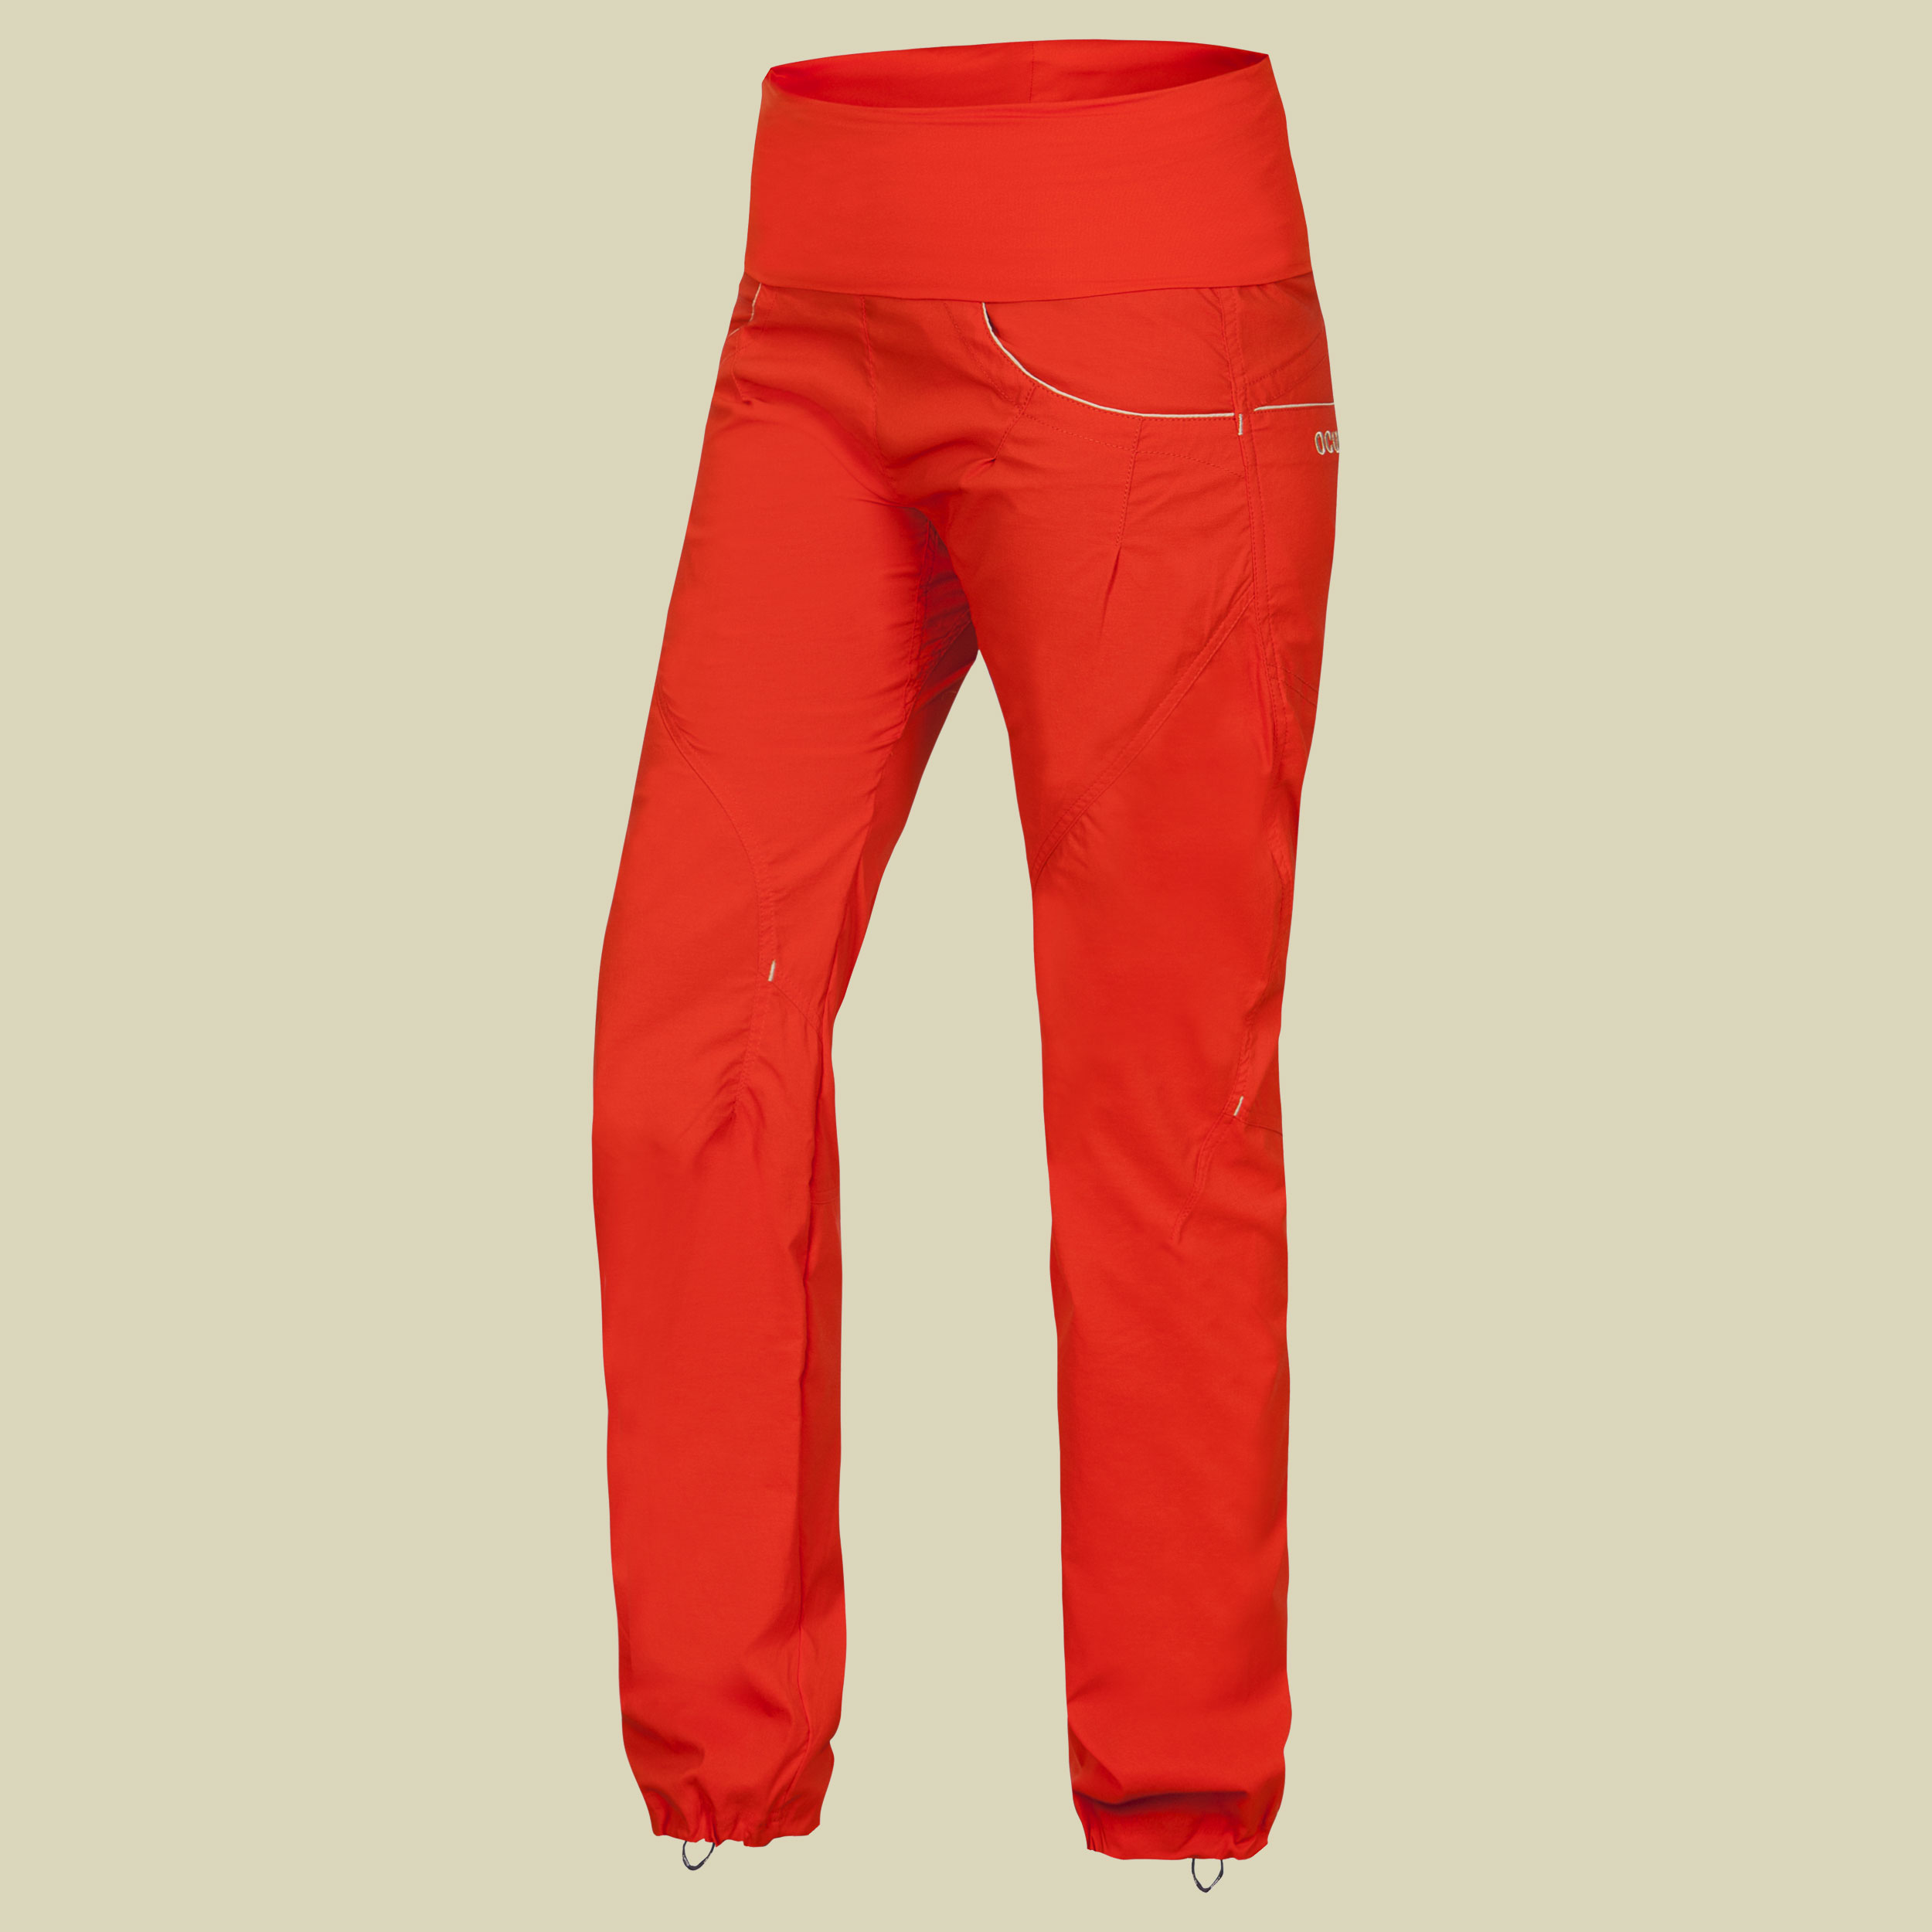 Noya Pants Women Größe XS Farbe orange poinciana